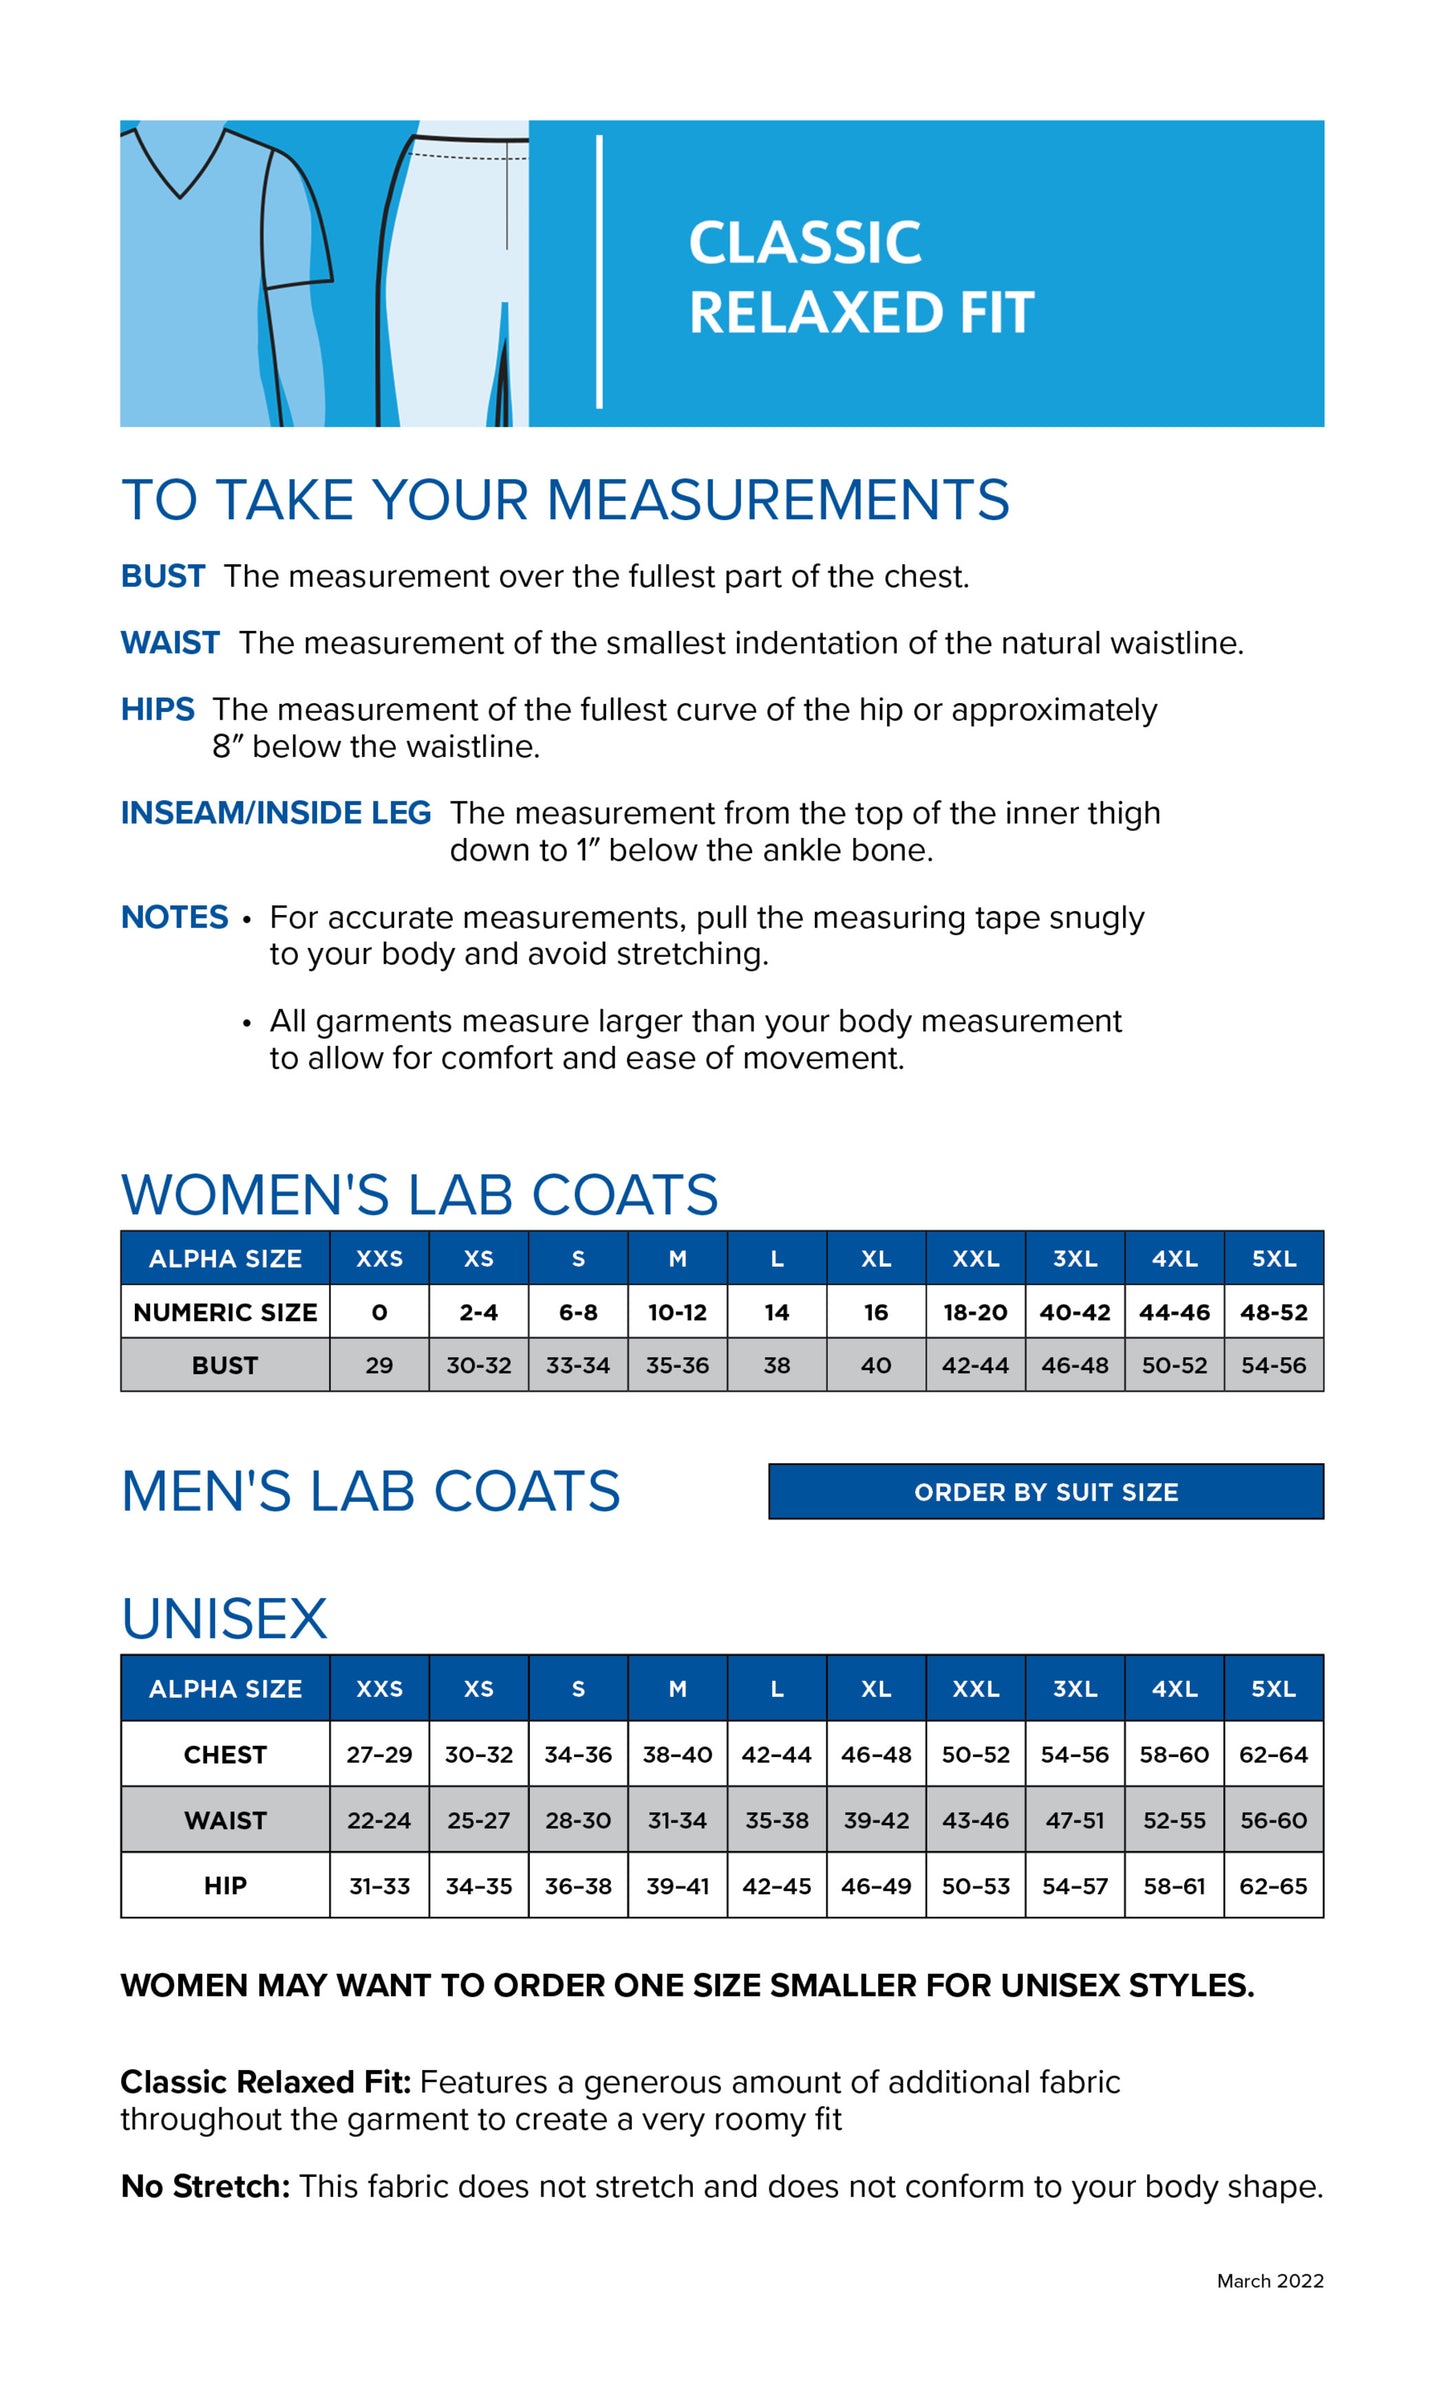 Men's 3-Pocket Full-Length Lab Coat